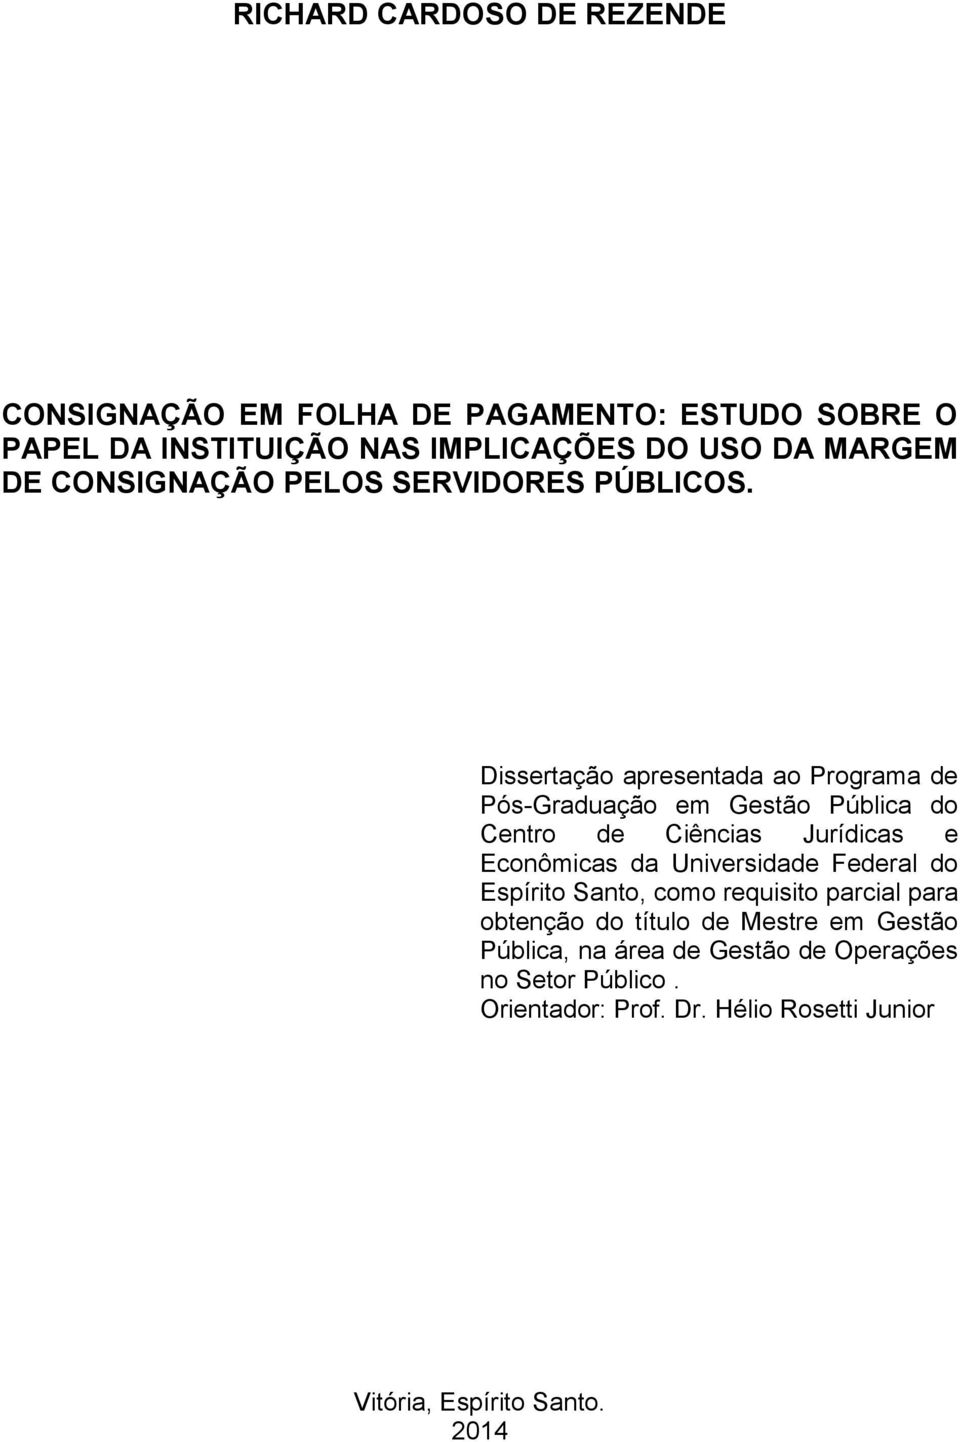 Dissertação apresentada ao Programa de Pós-Graduação em Gestão Pública do Centro de Ciências Jurídicas e Econômicas da Universidade